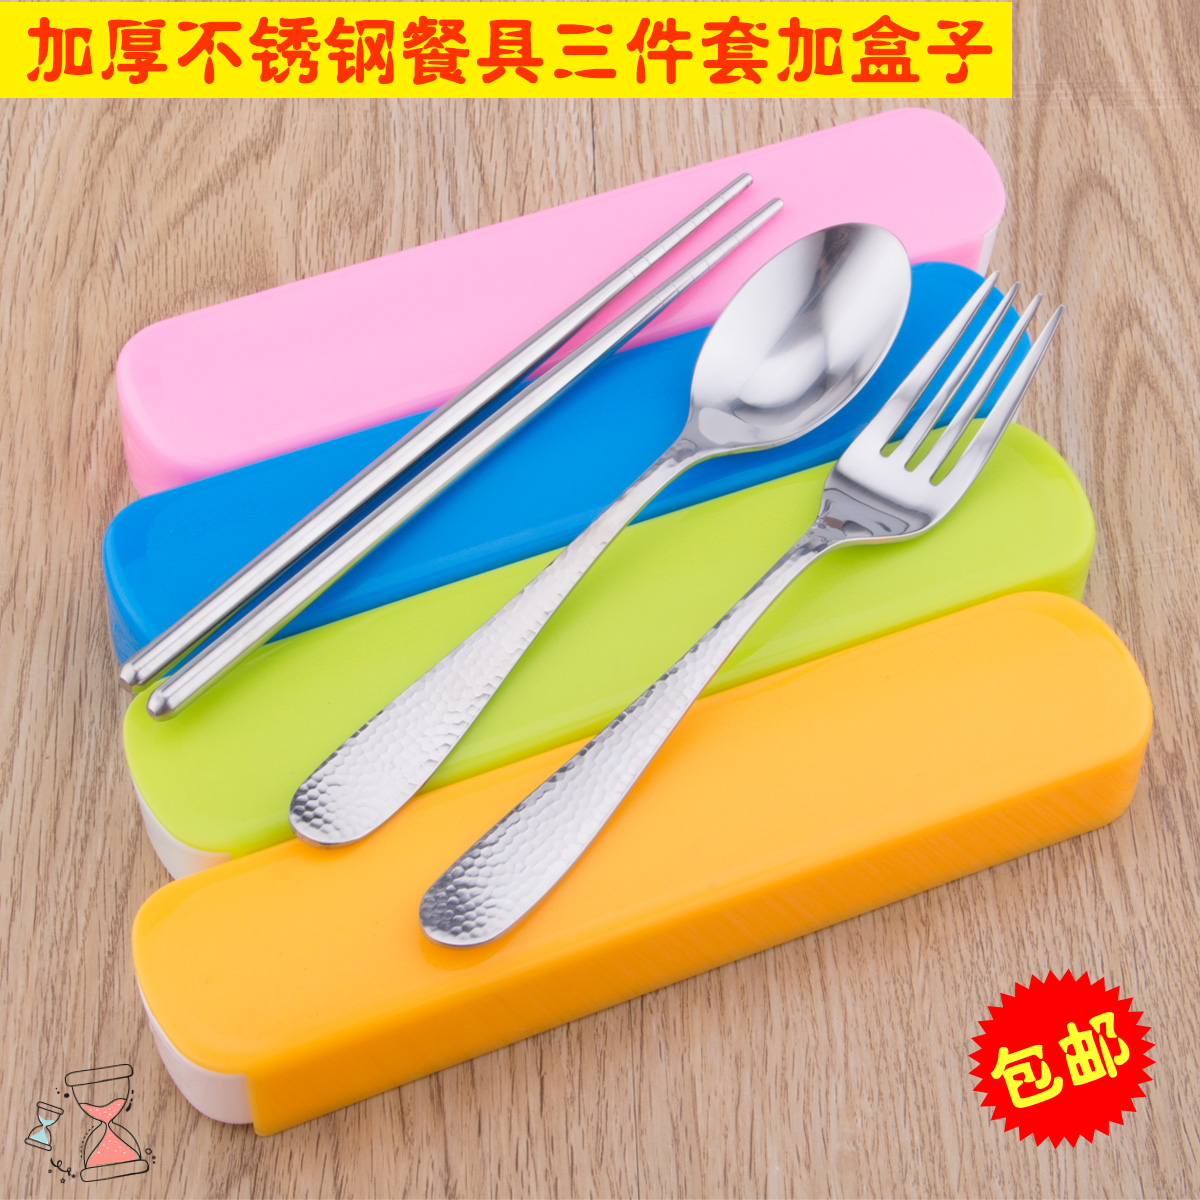 【天天特价】餐具三件套不锈钢筷子长柄汤勺叉子便携式餐具调羹